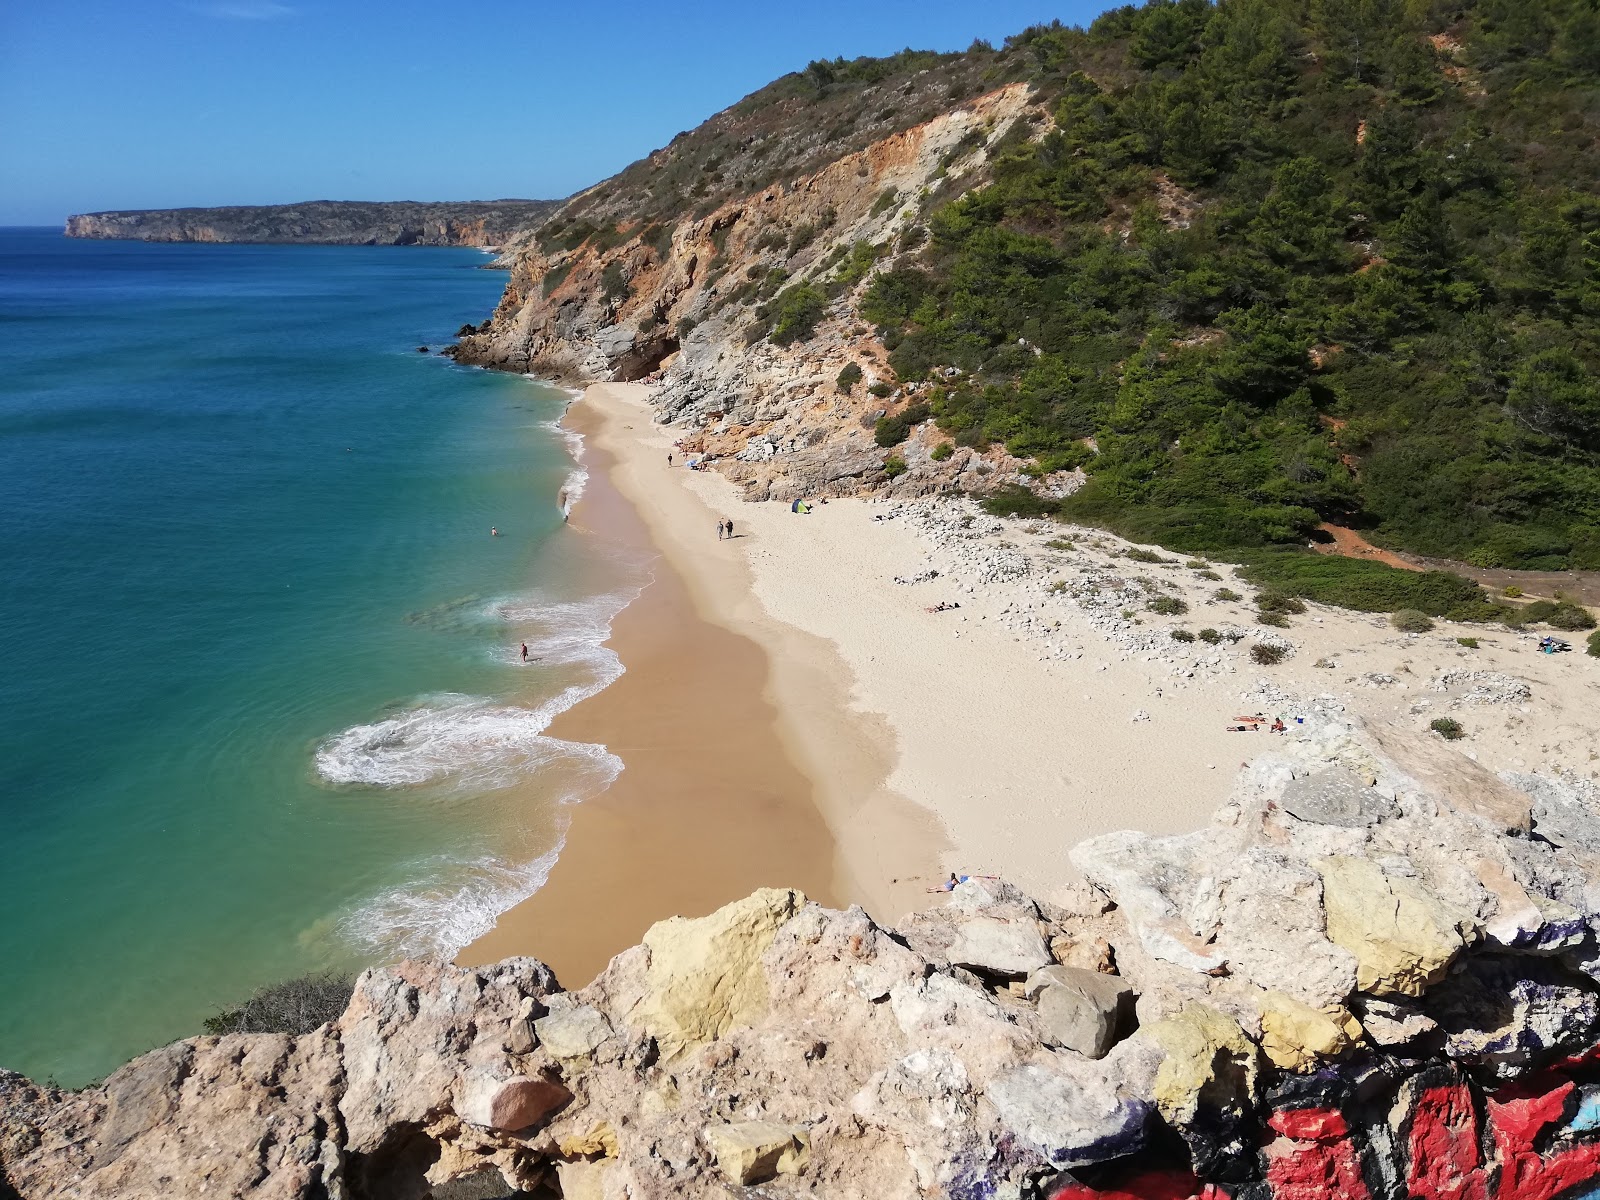 Praia da Figueira'in fotoğrafı parlak ince kum yüzey ile